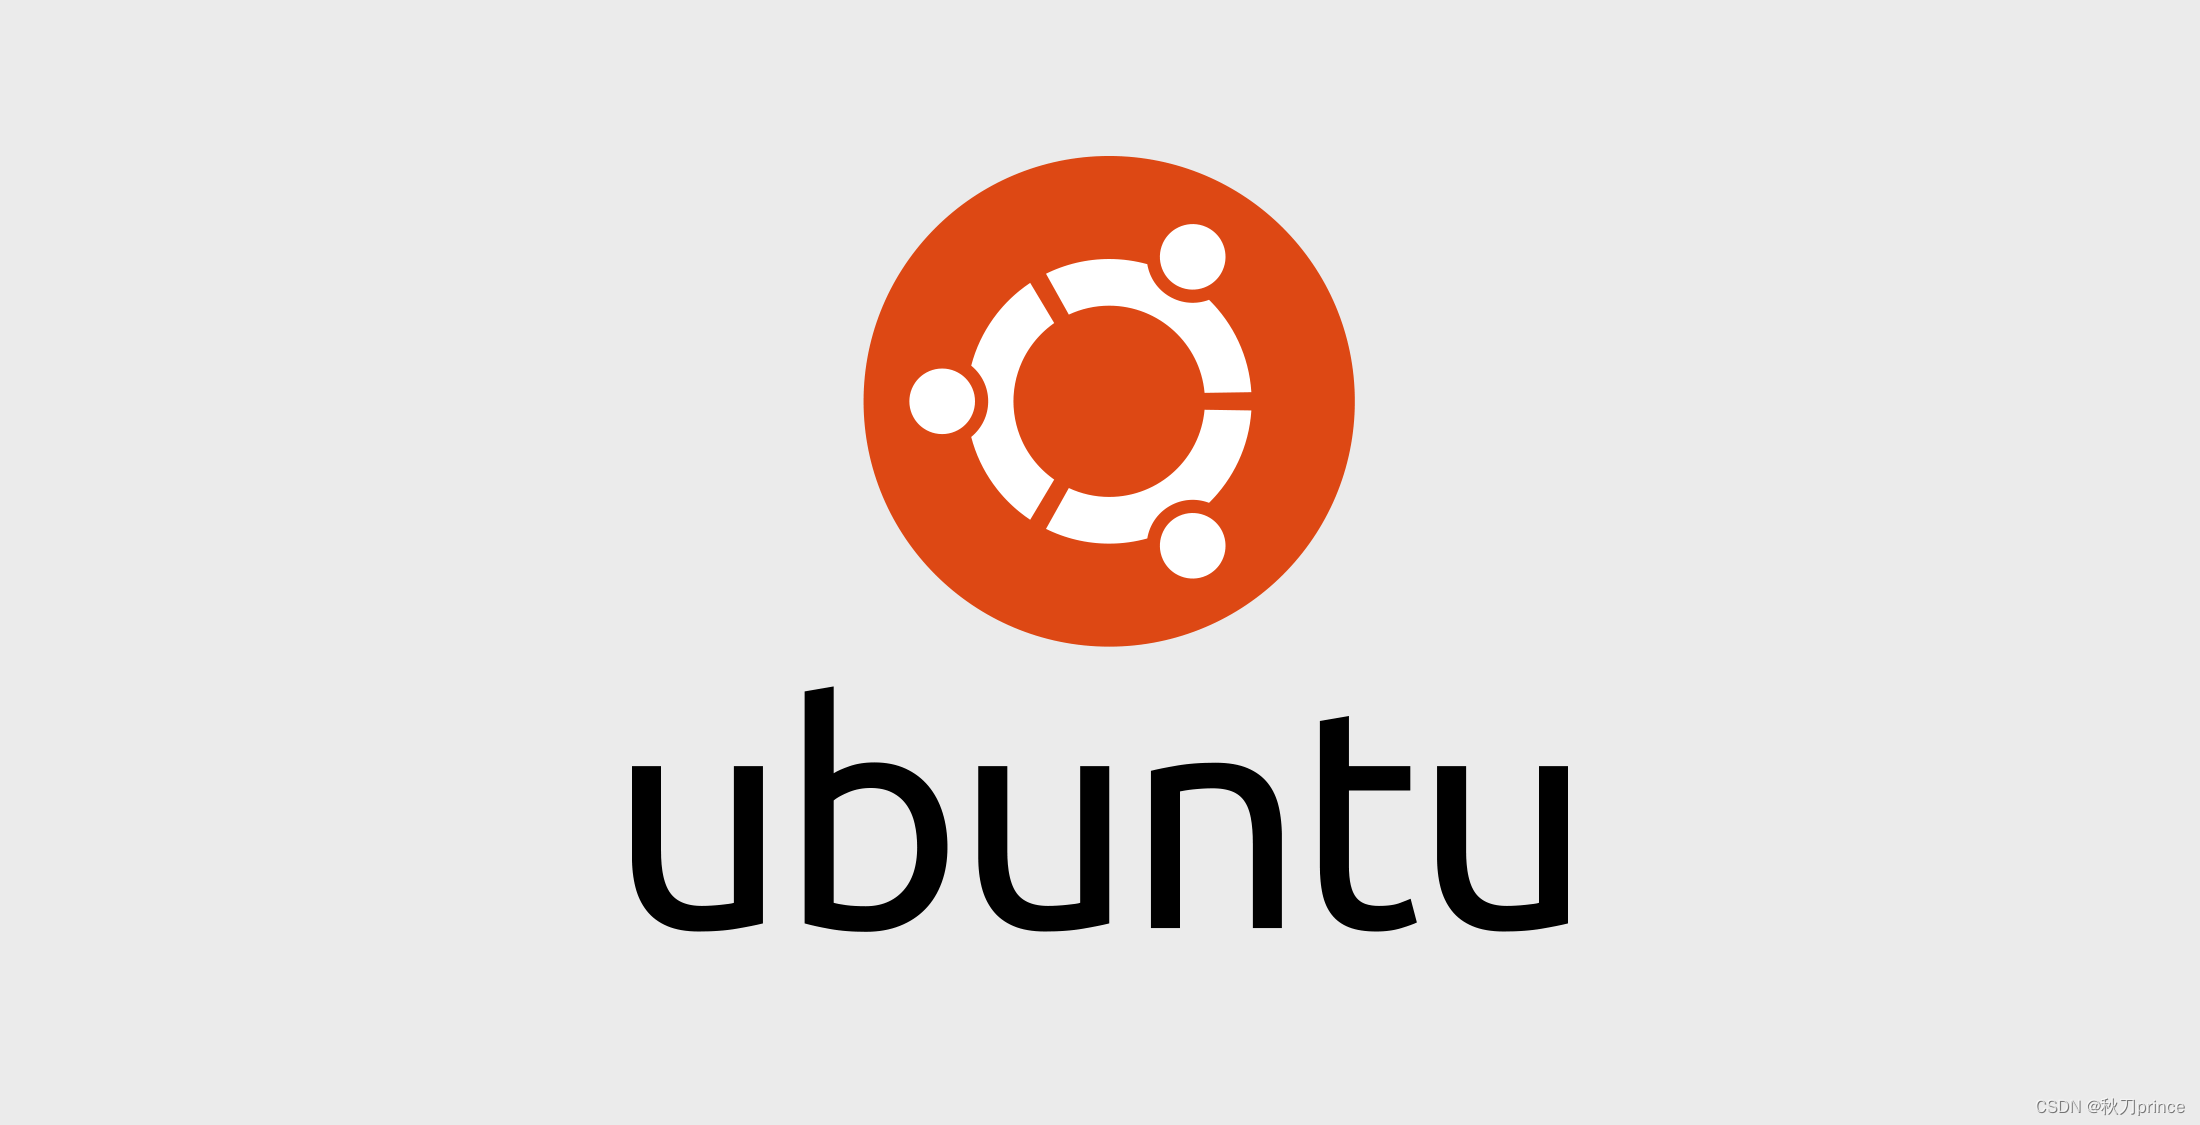 【Ubuntu】详细说说Parallels DeskTop安装和使用Ubuntu系统